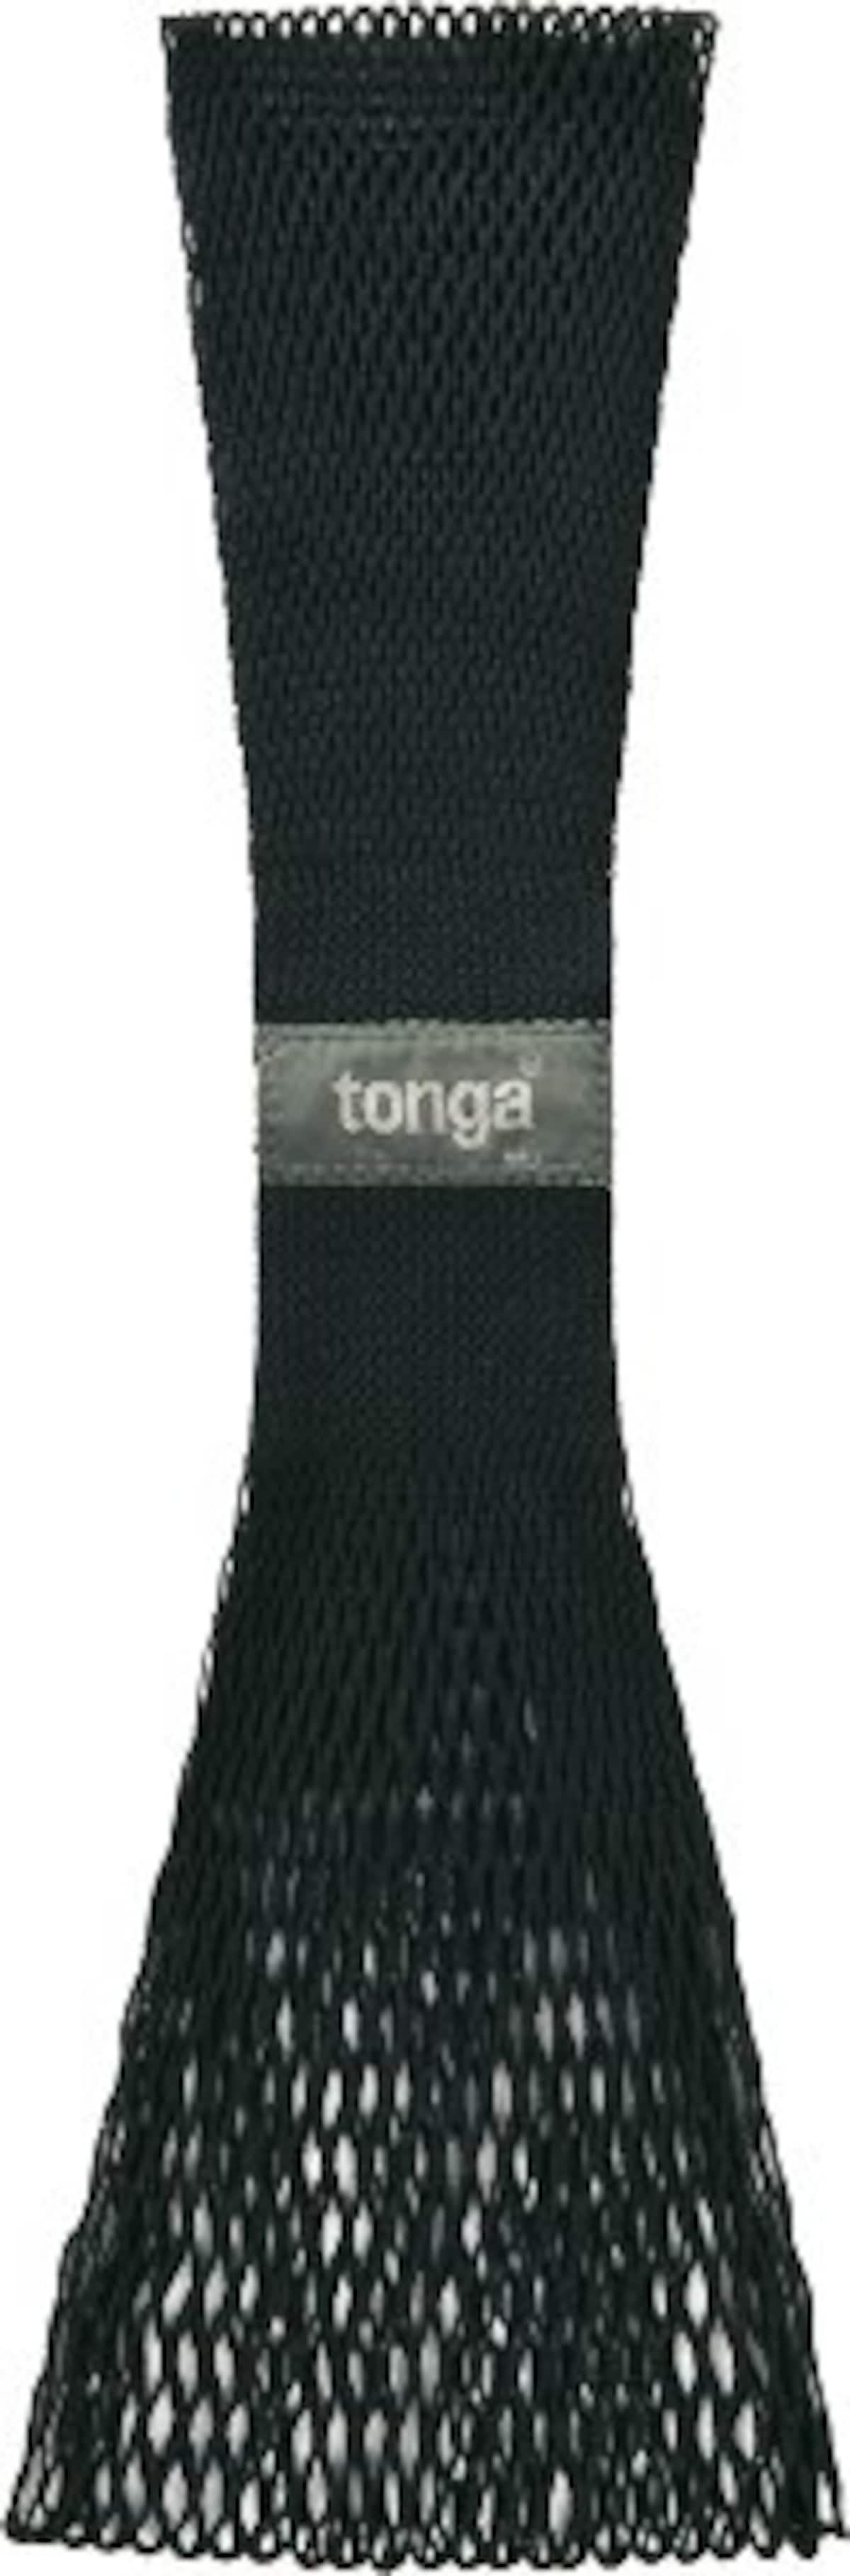 Tonga トンガ・フィット